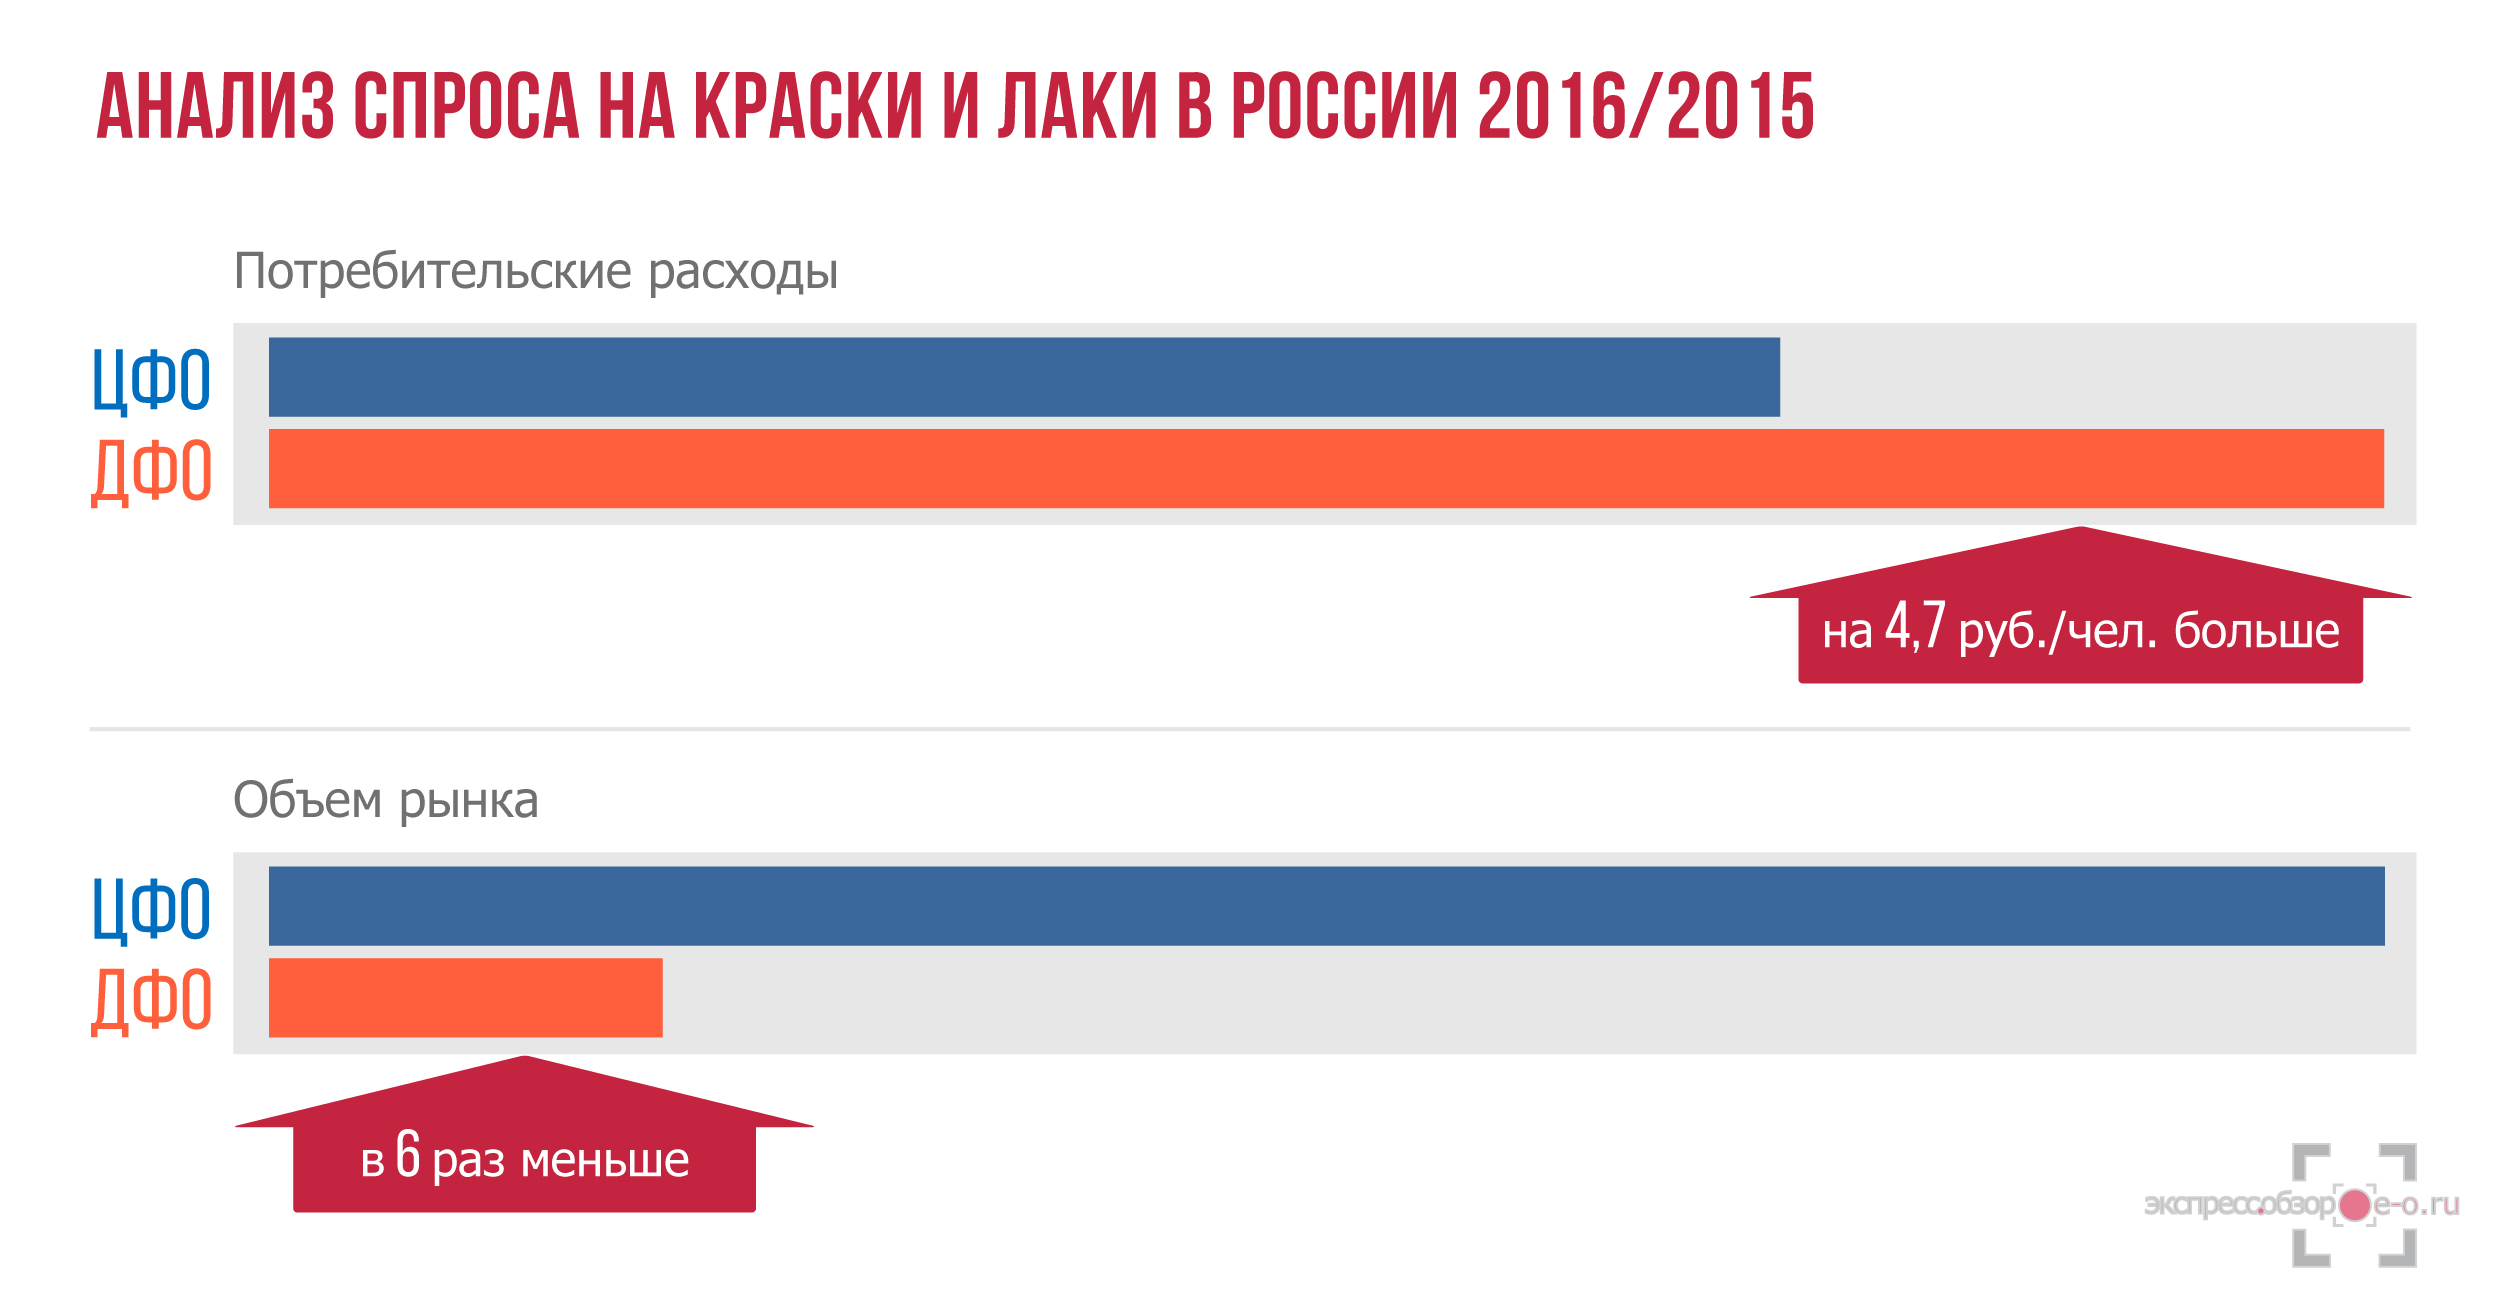 Рынок лаков и красок в России в 2016 году